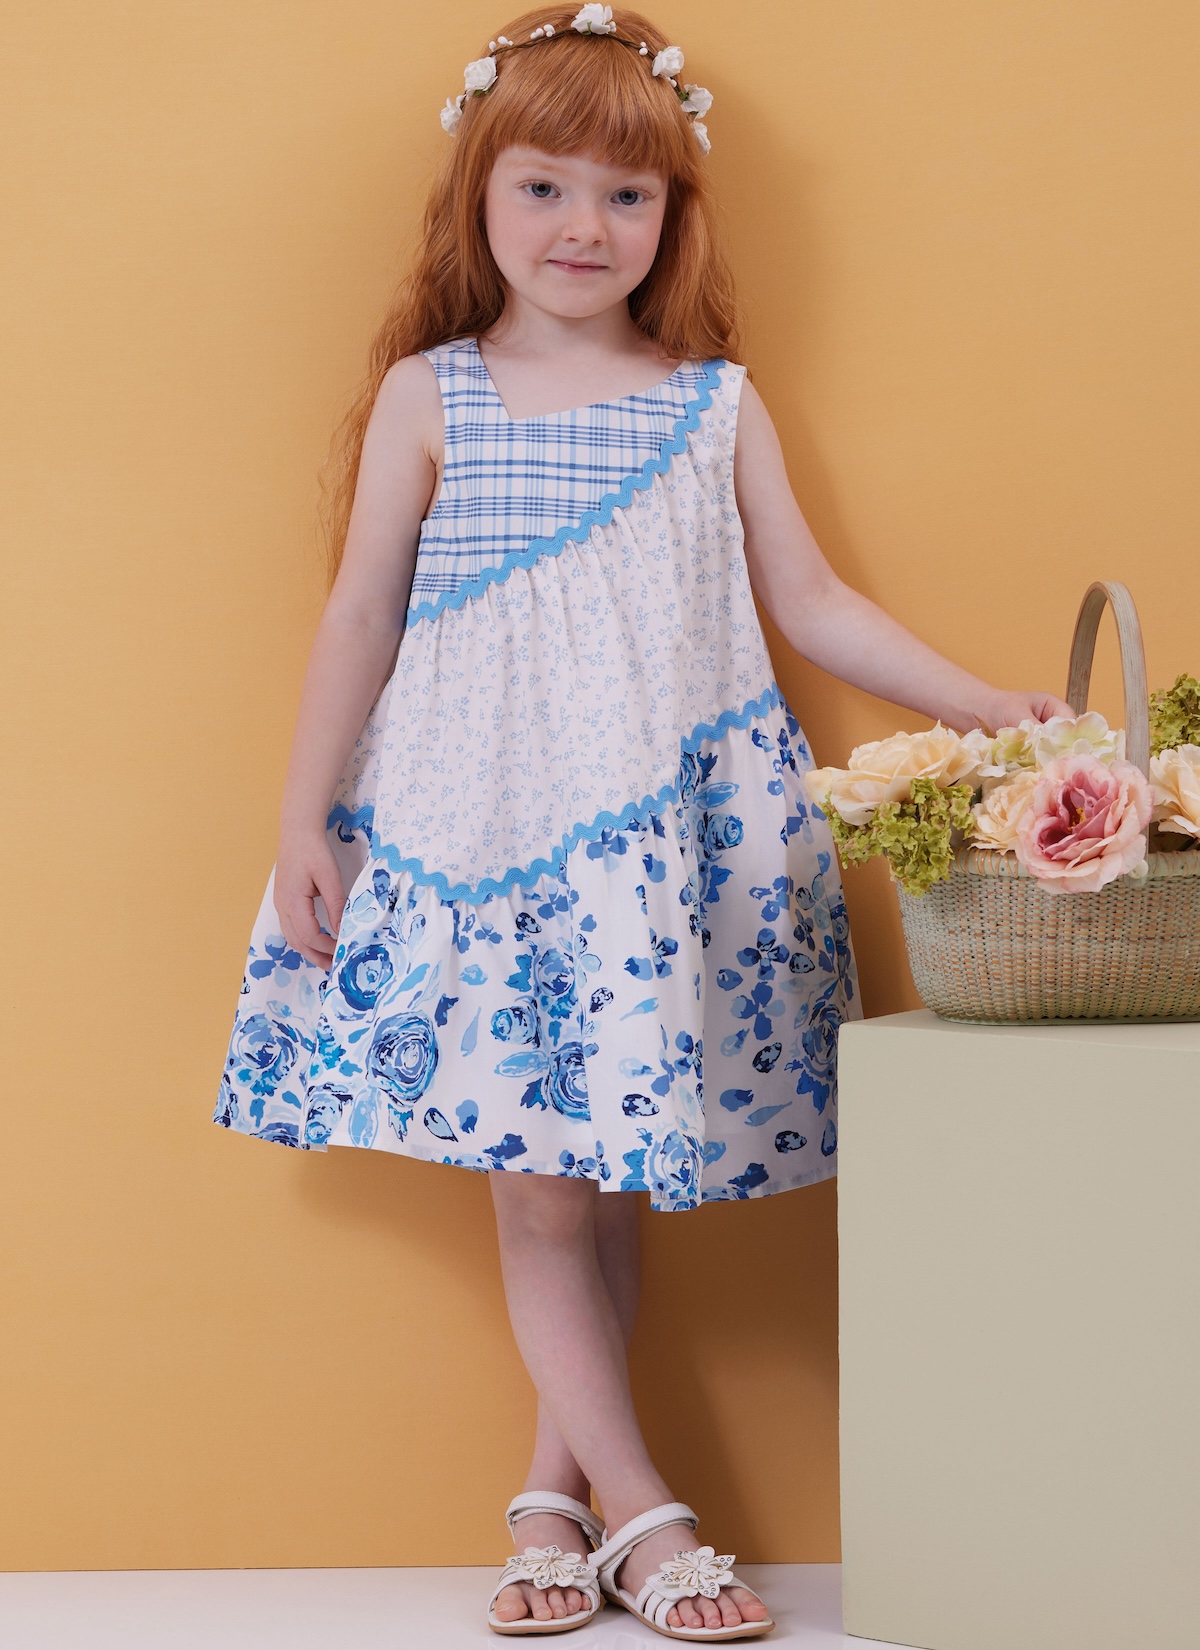 Butterick® Papierschnittmuster Kinder Kleid - B6988